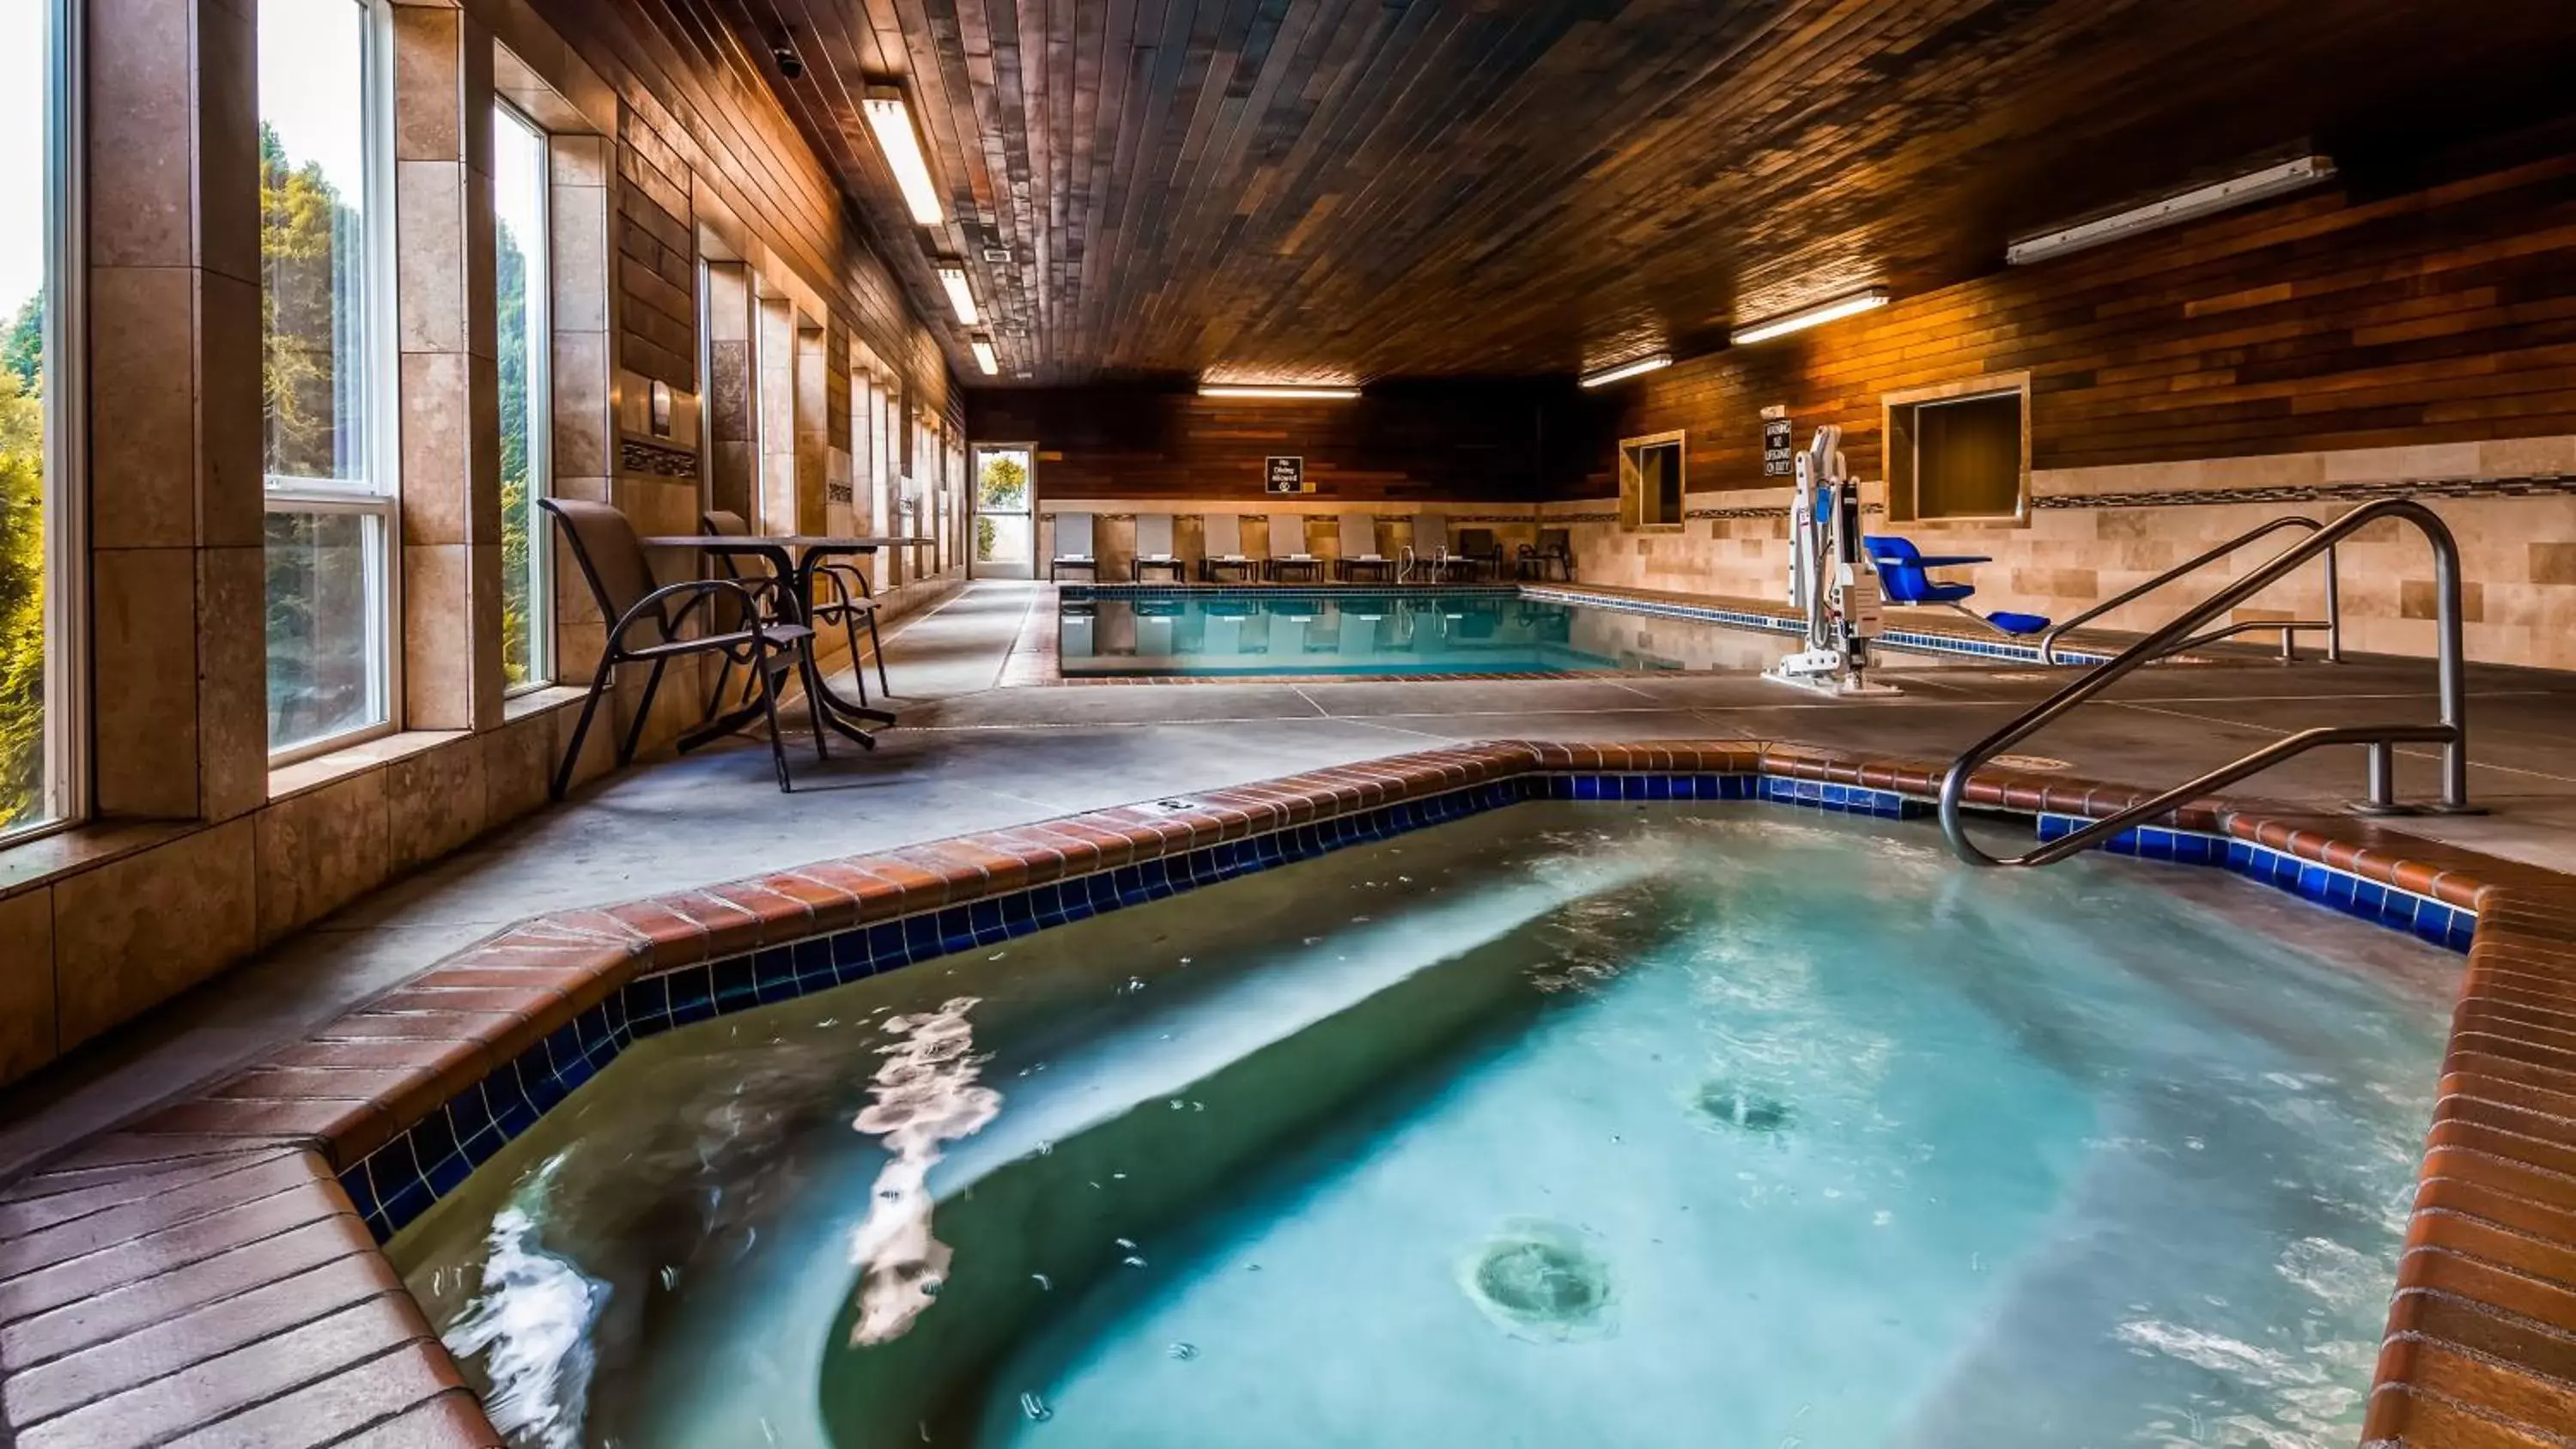 Hot Tub, Swimming Pool in Best Western Plus Landmark Inn